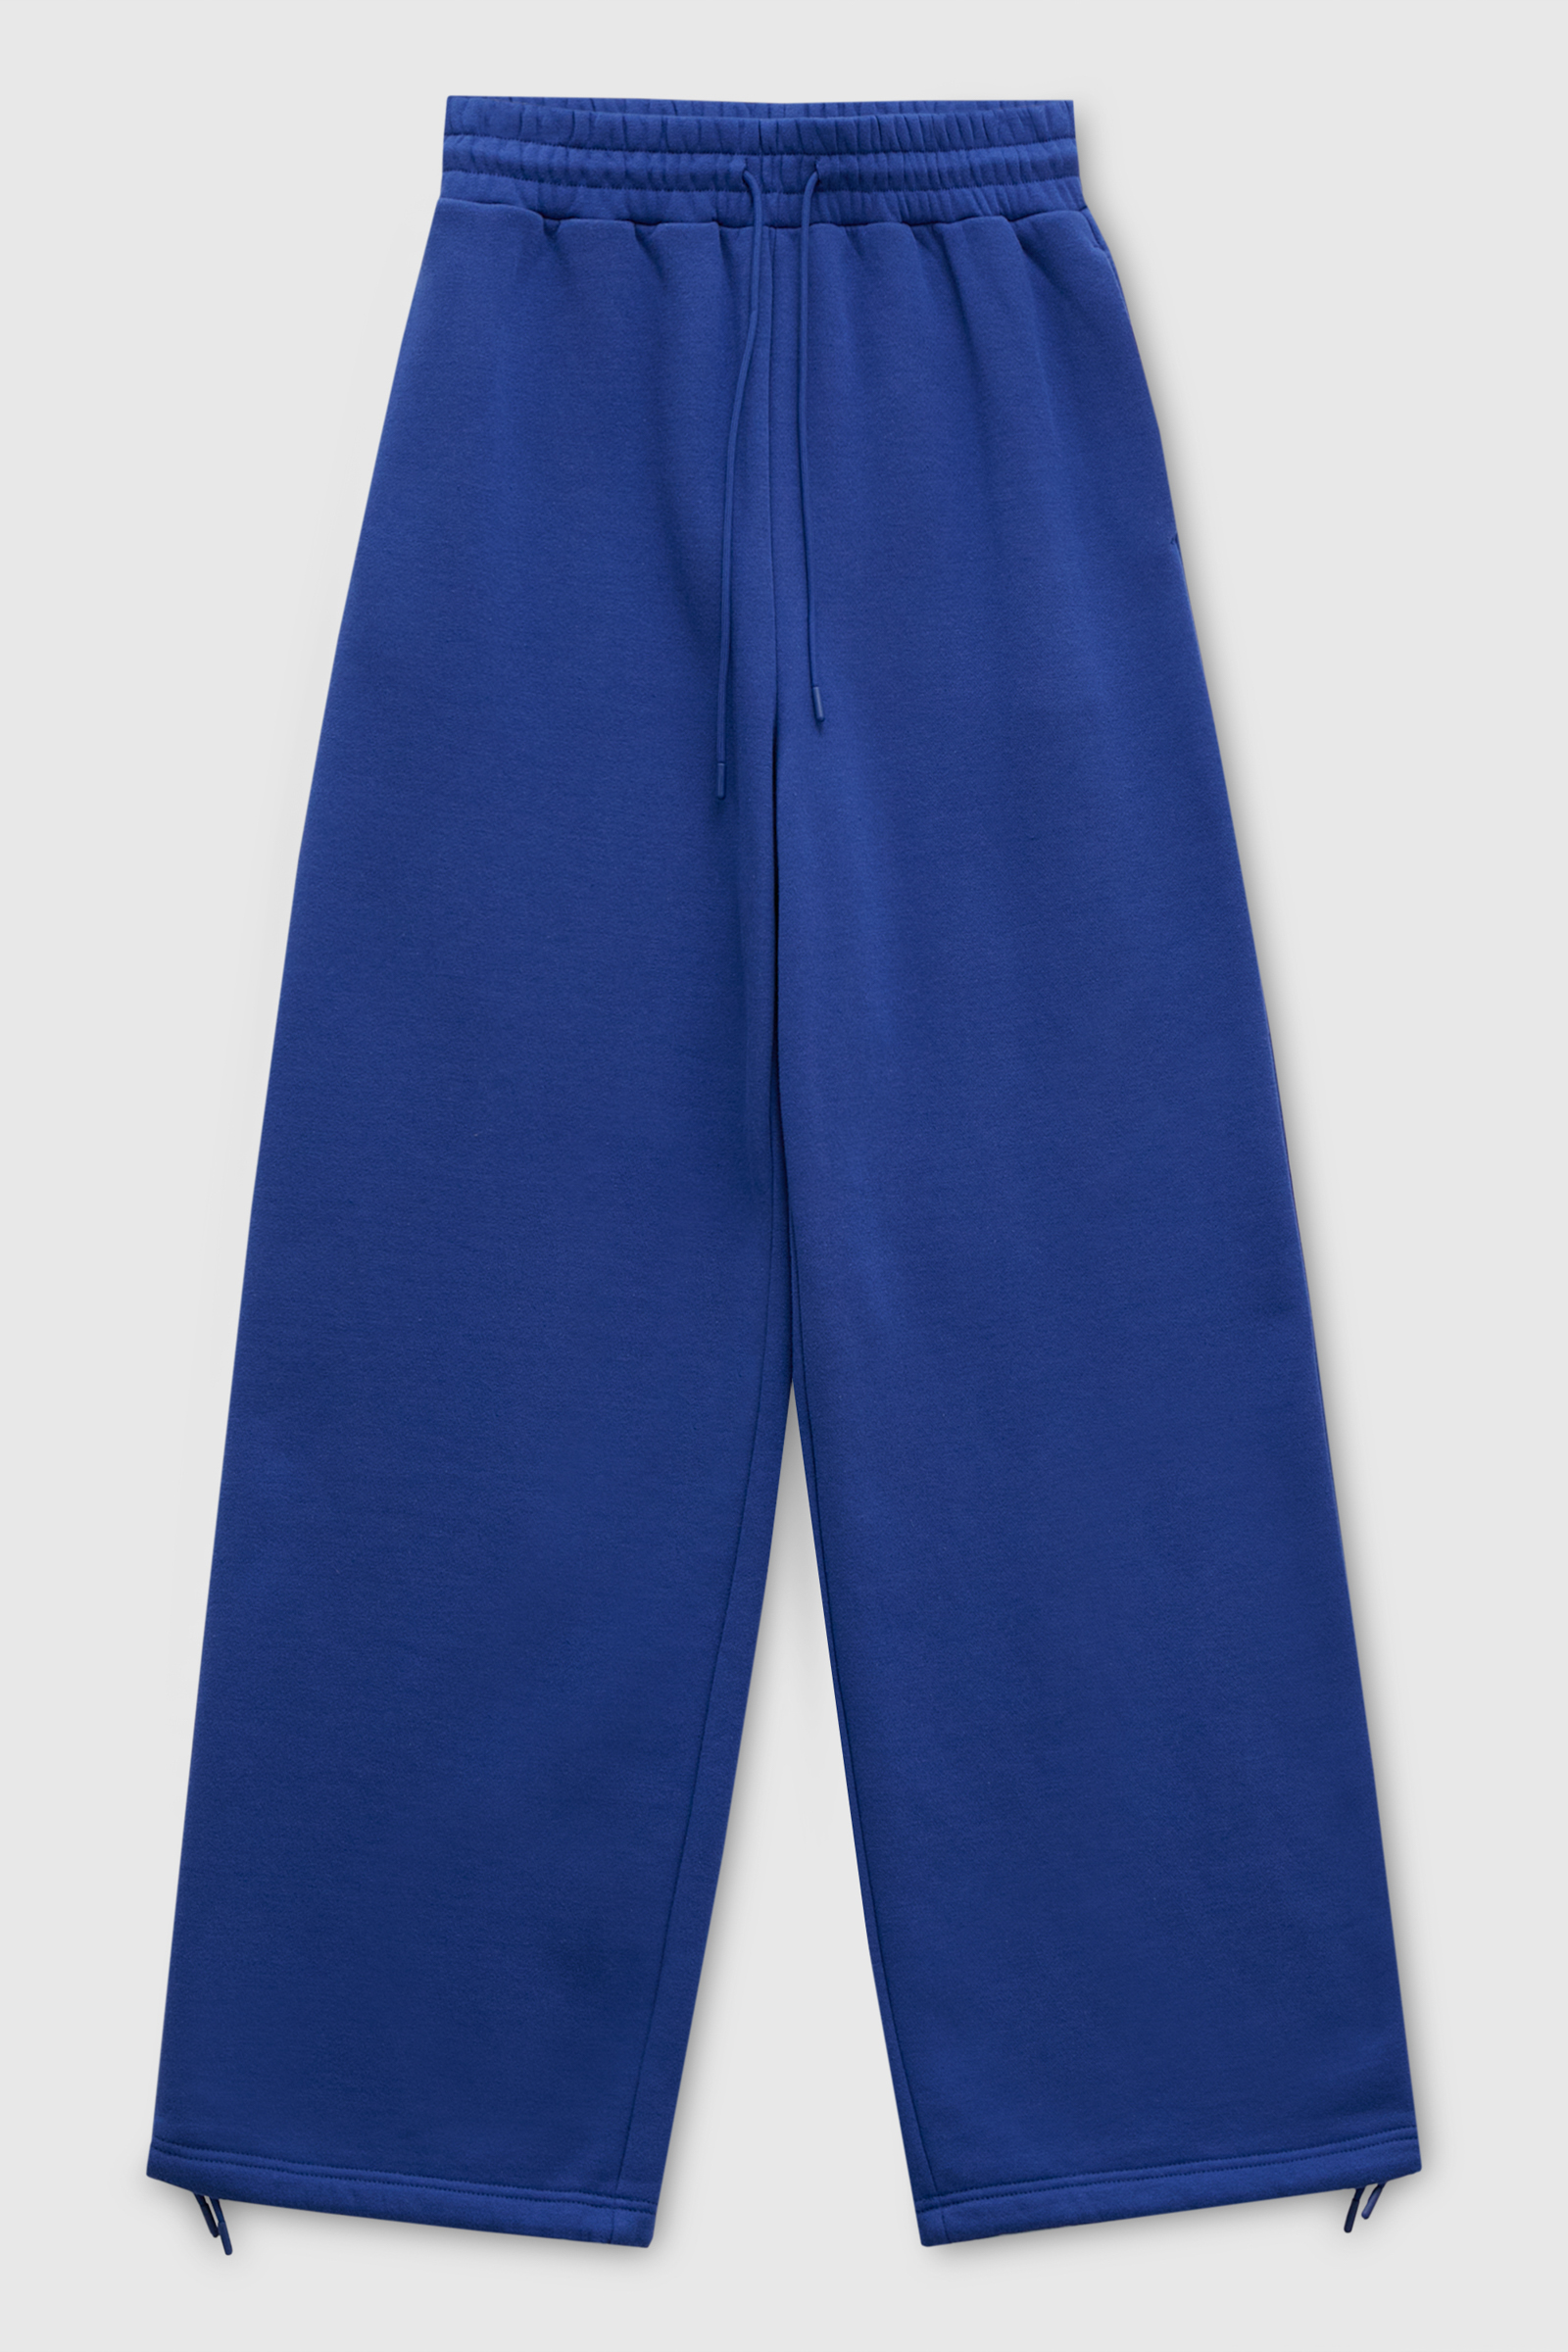 Спортивные брюки женские Finn Flare FAD110161 синие XL